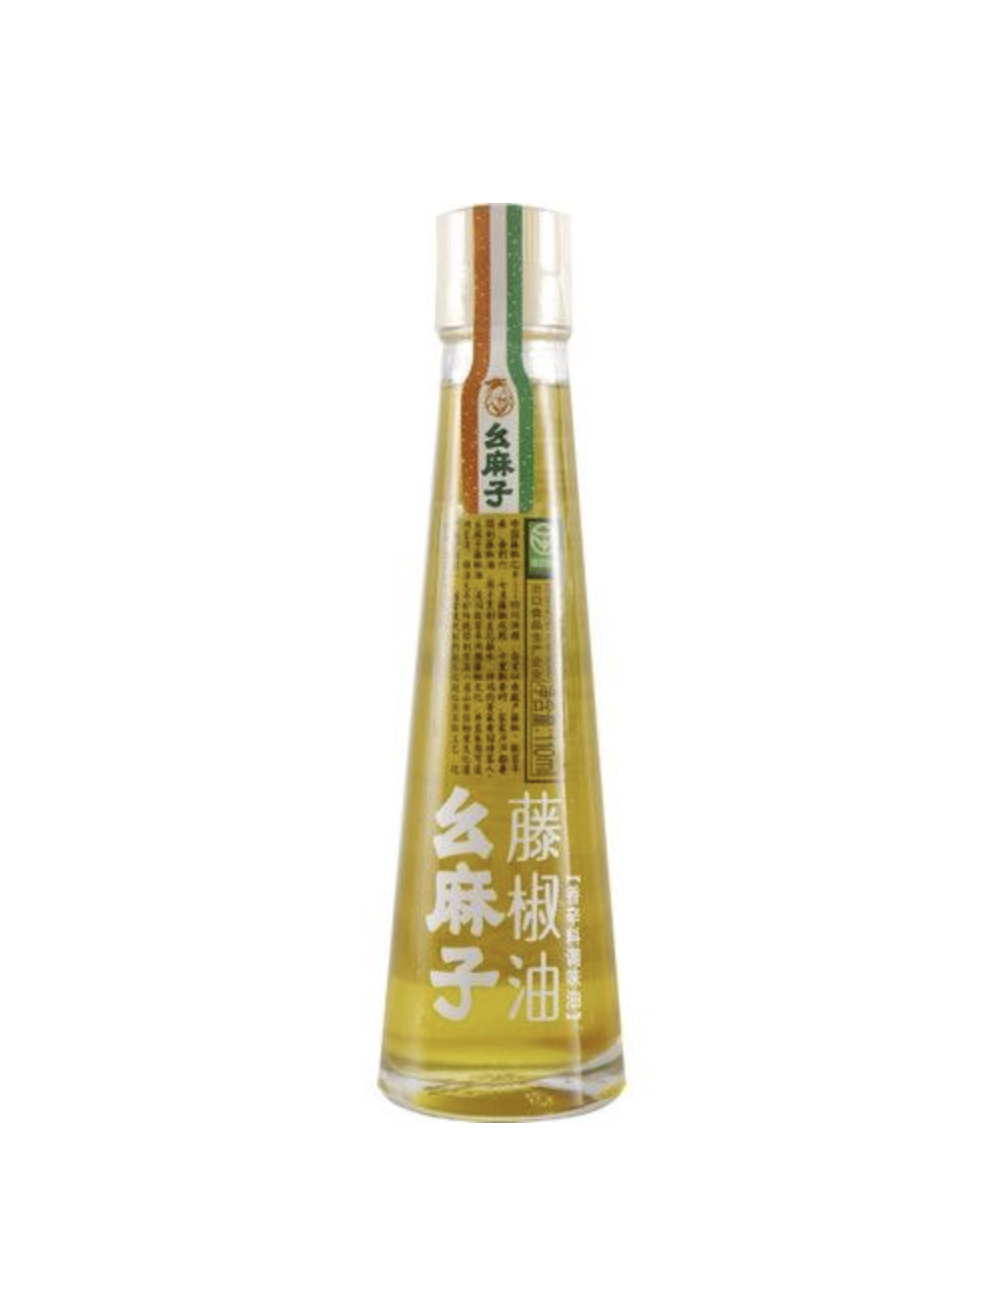 Green Sichuan Pepper Oil 110ml Yaomazi China